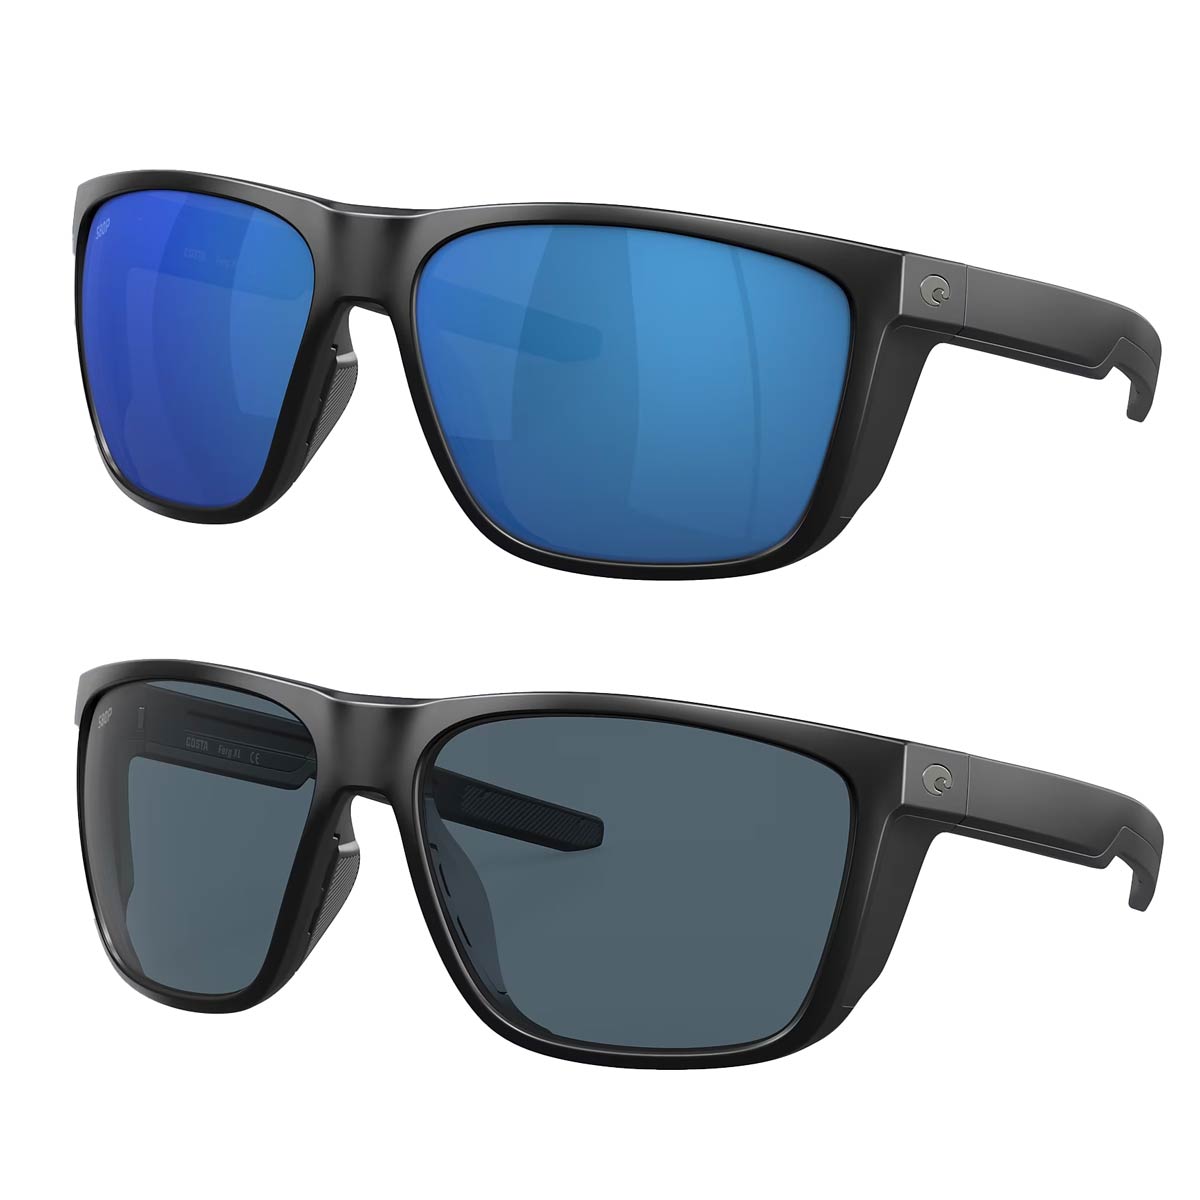 Polarised Fishing Sunglasses & Accessories - Rok Max